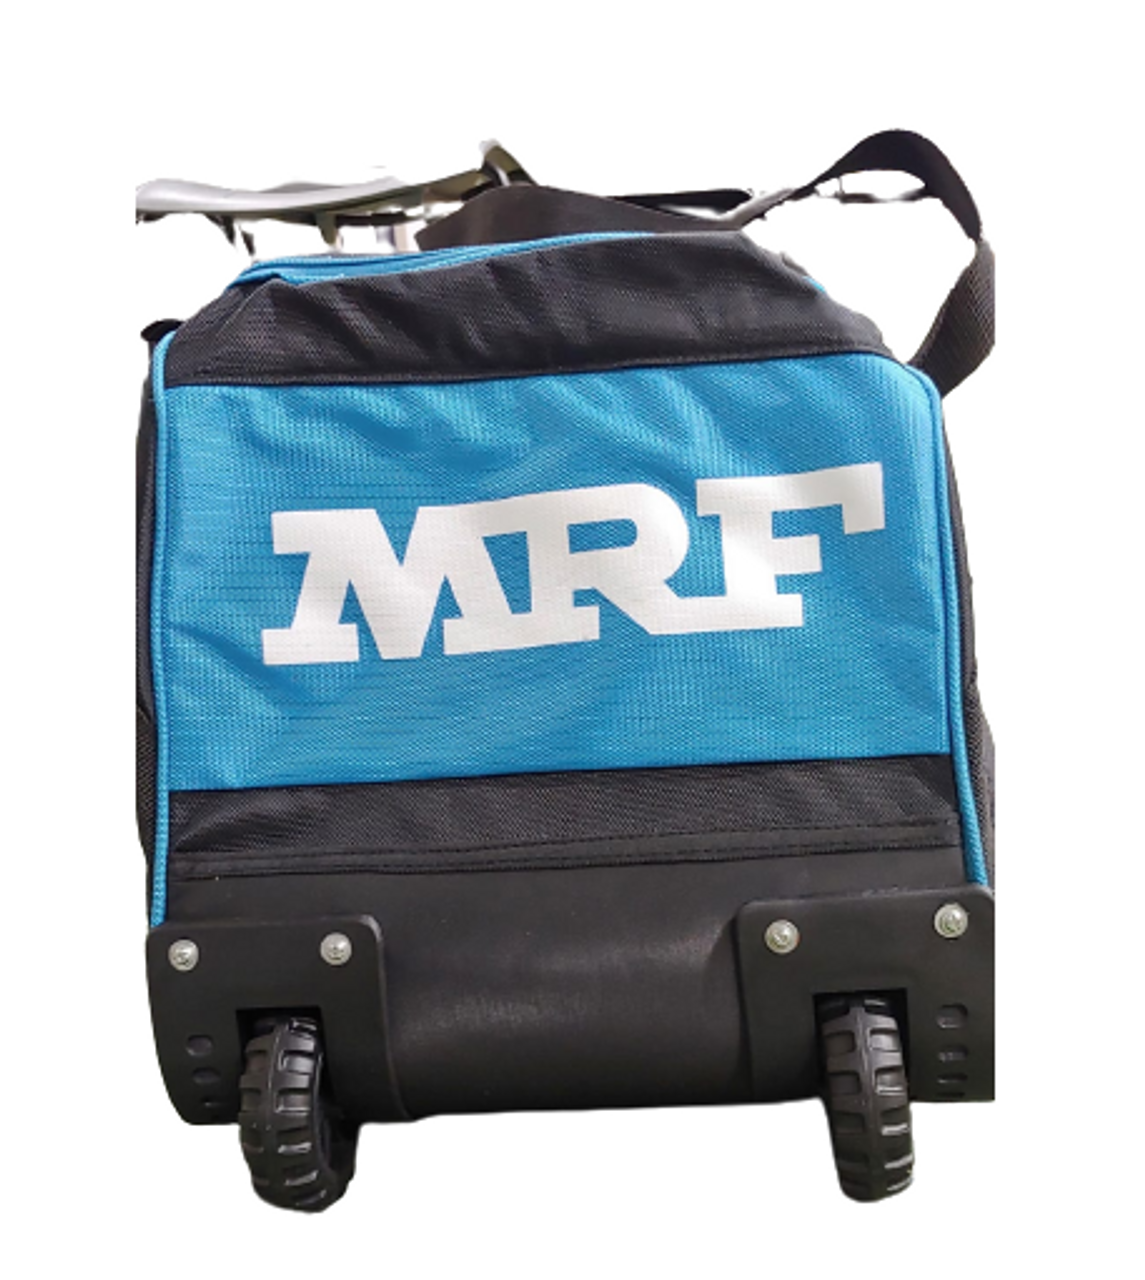 MRF Legend VK 18 4.0 Cricket Kit Bag